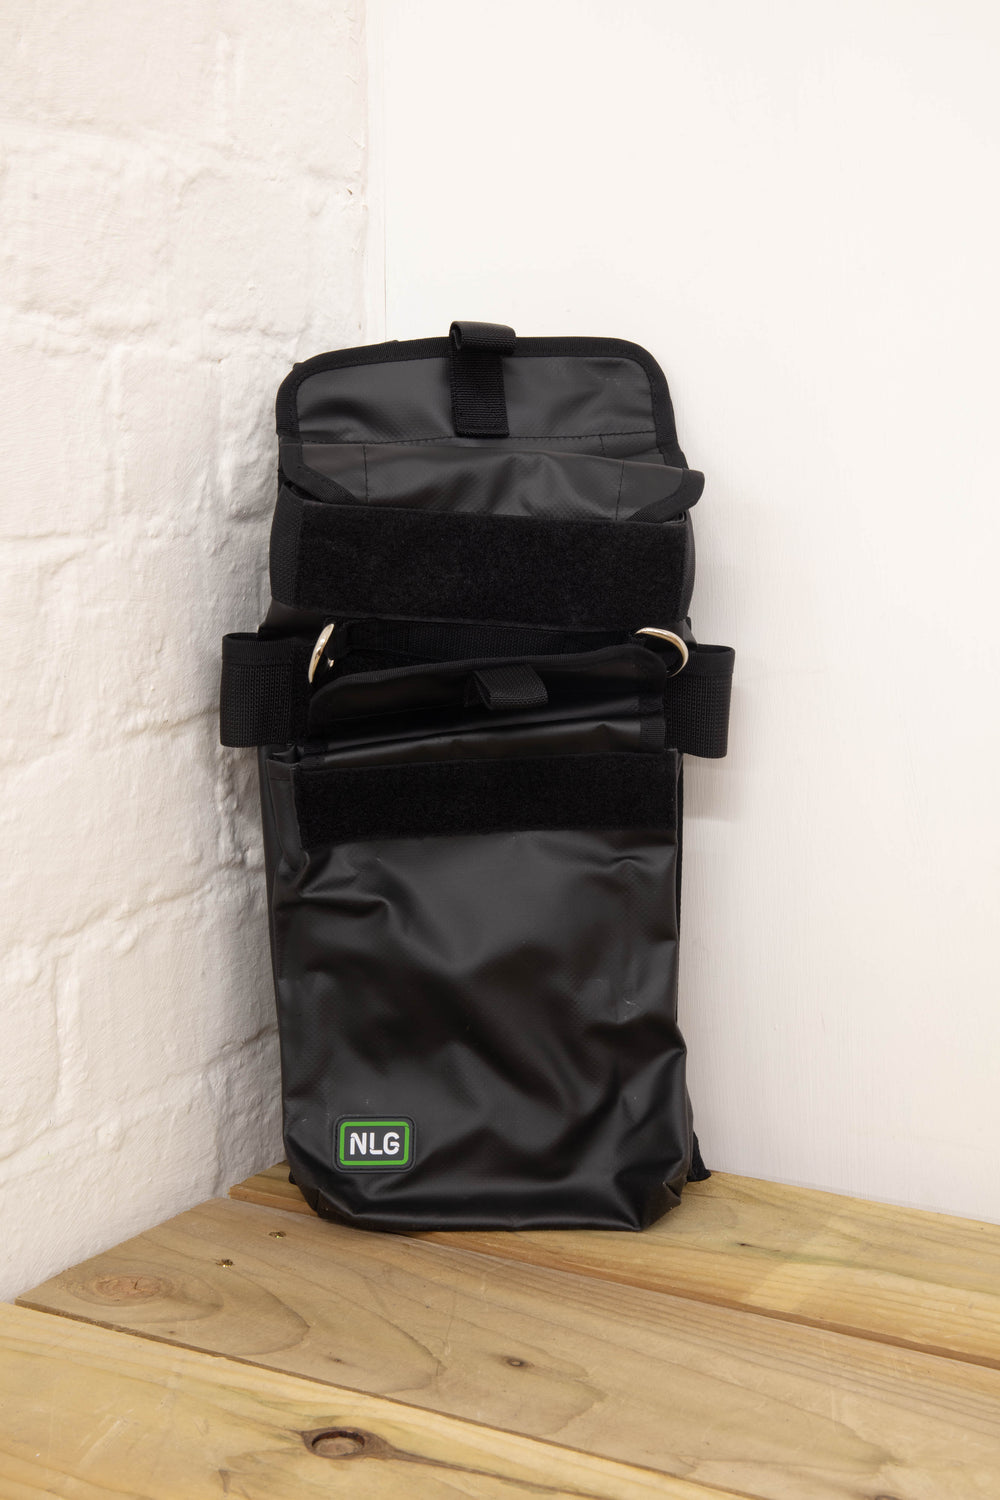 NLG - Tall Tool Bag